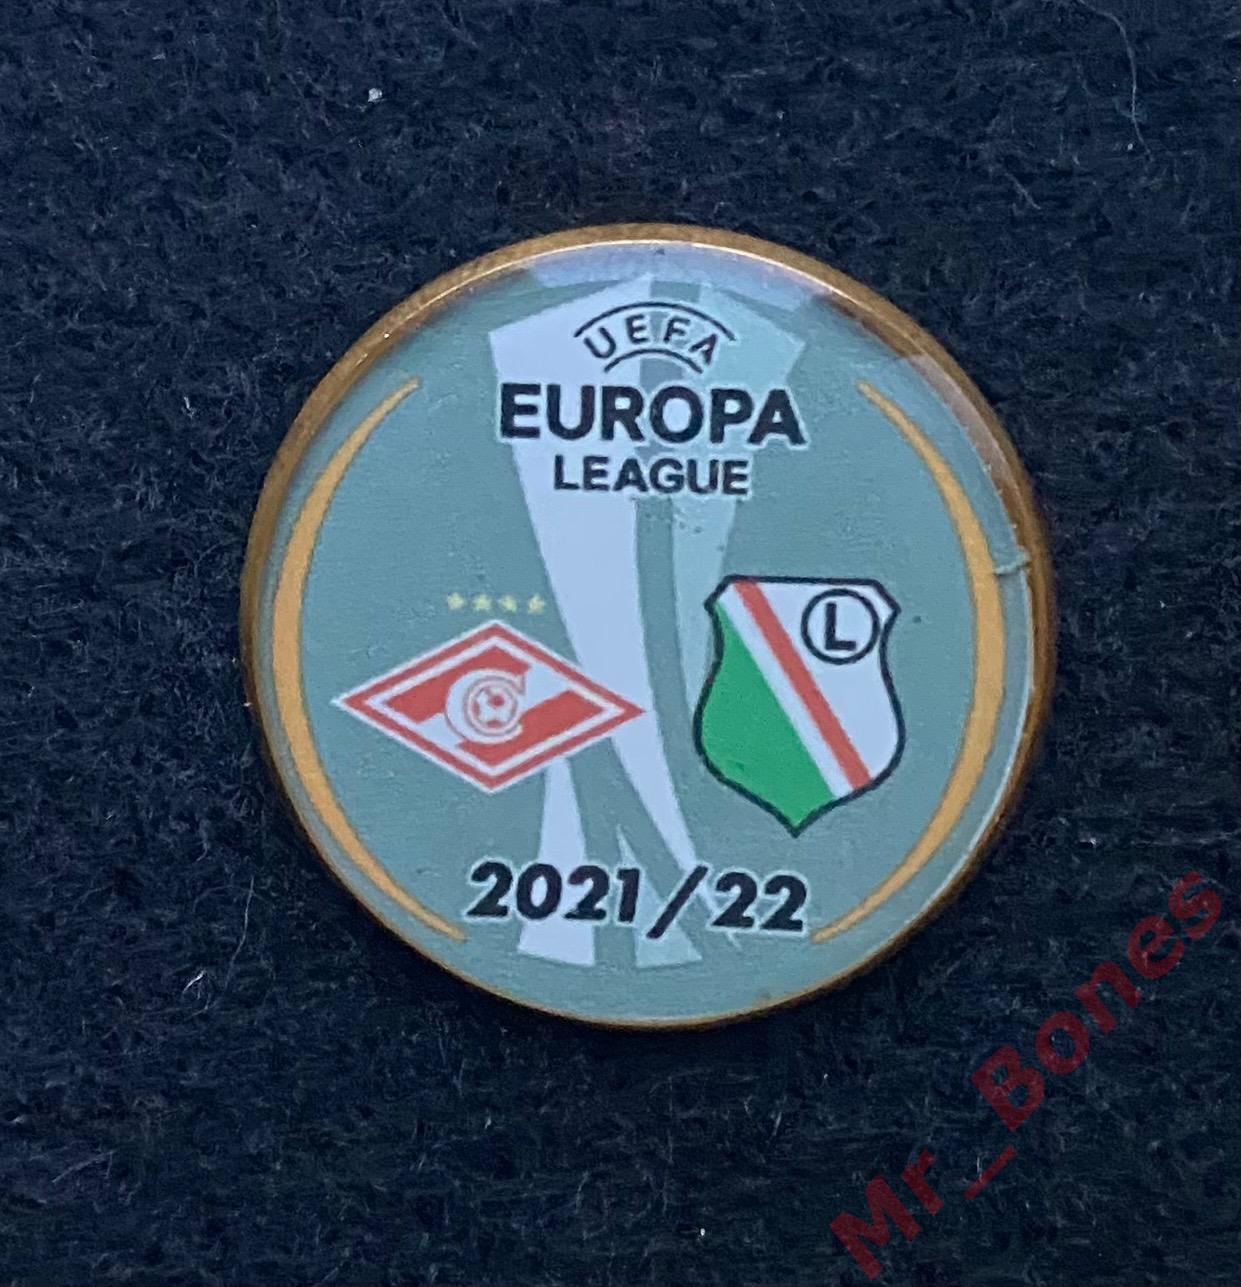 Спартак - Легия, лига Европы 2021/22